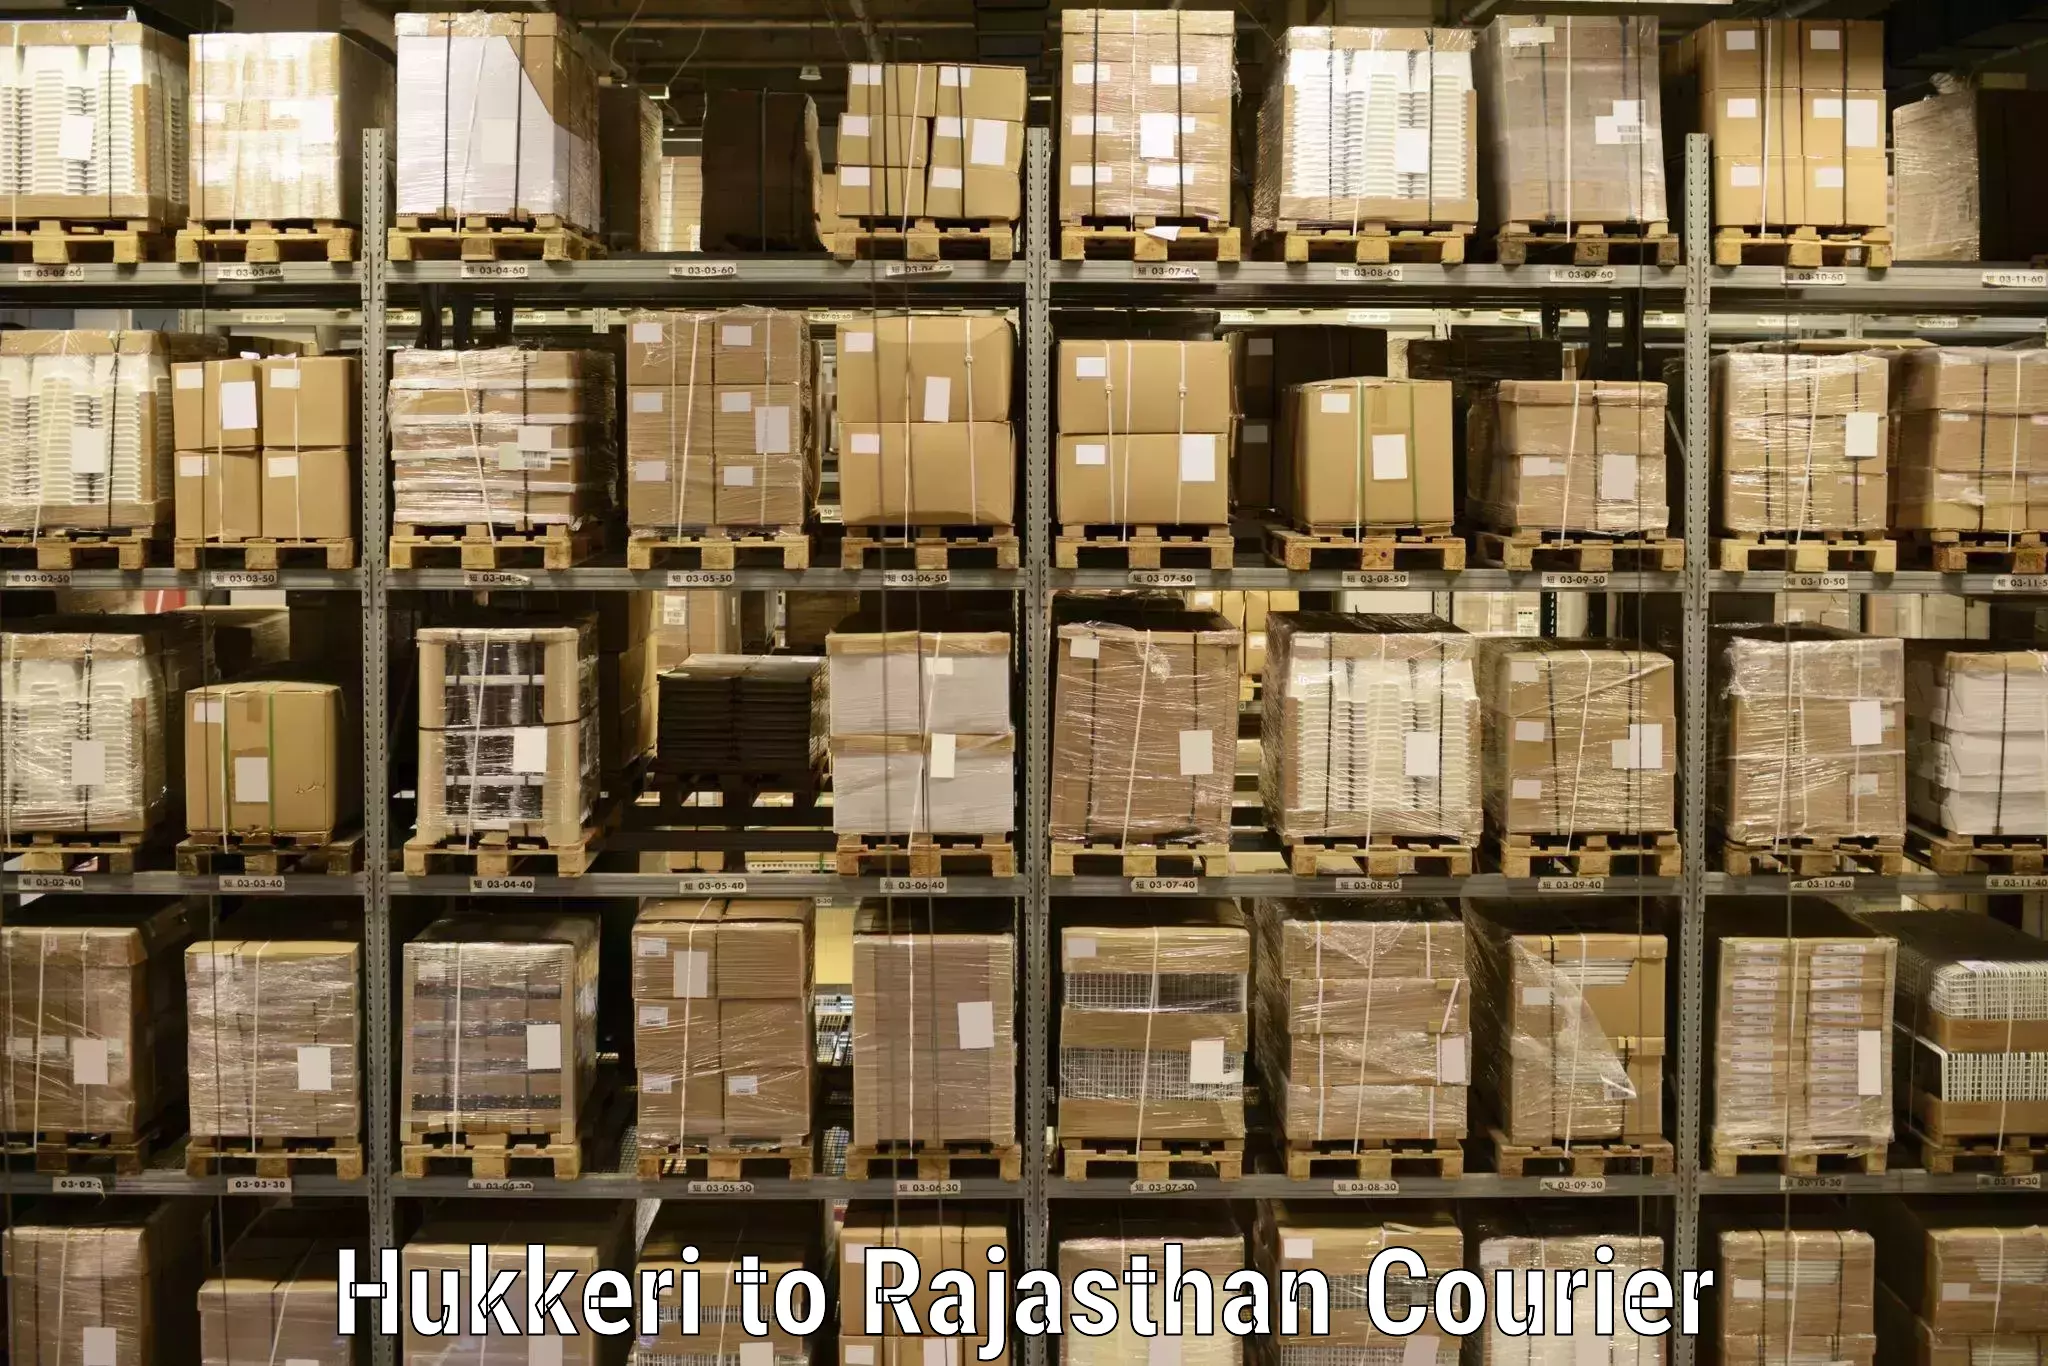 Supply chain efficiency Hukkeri to Paota